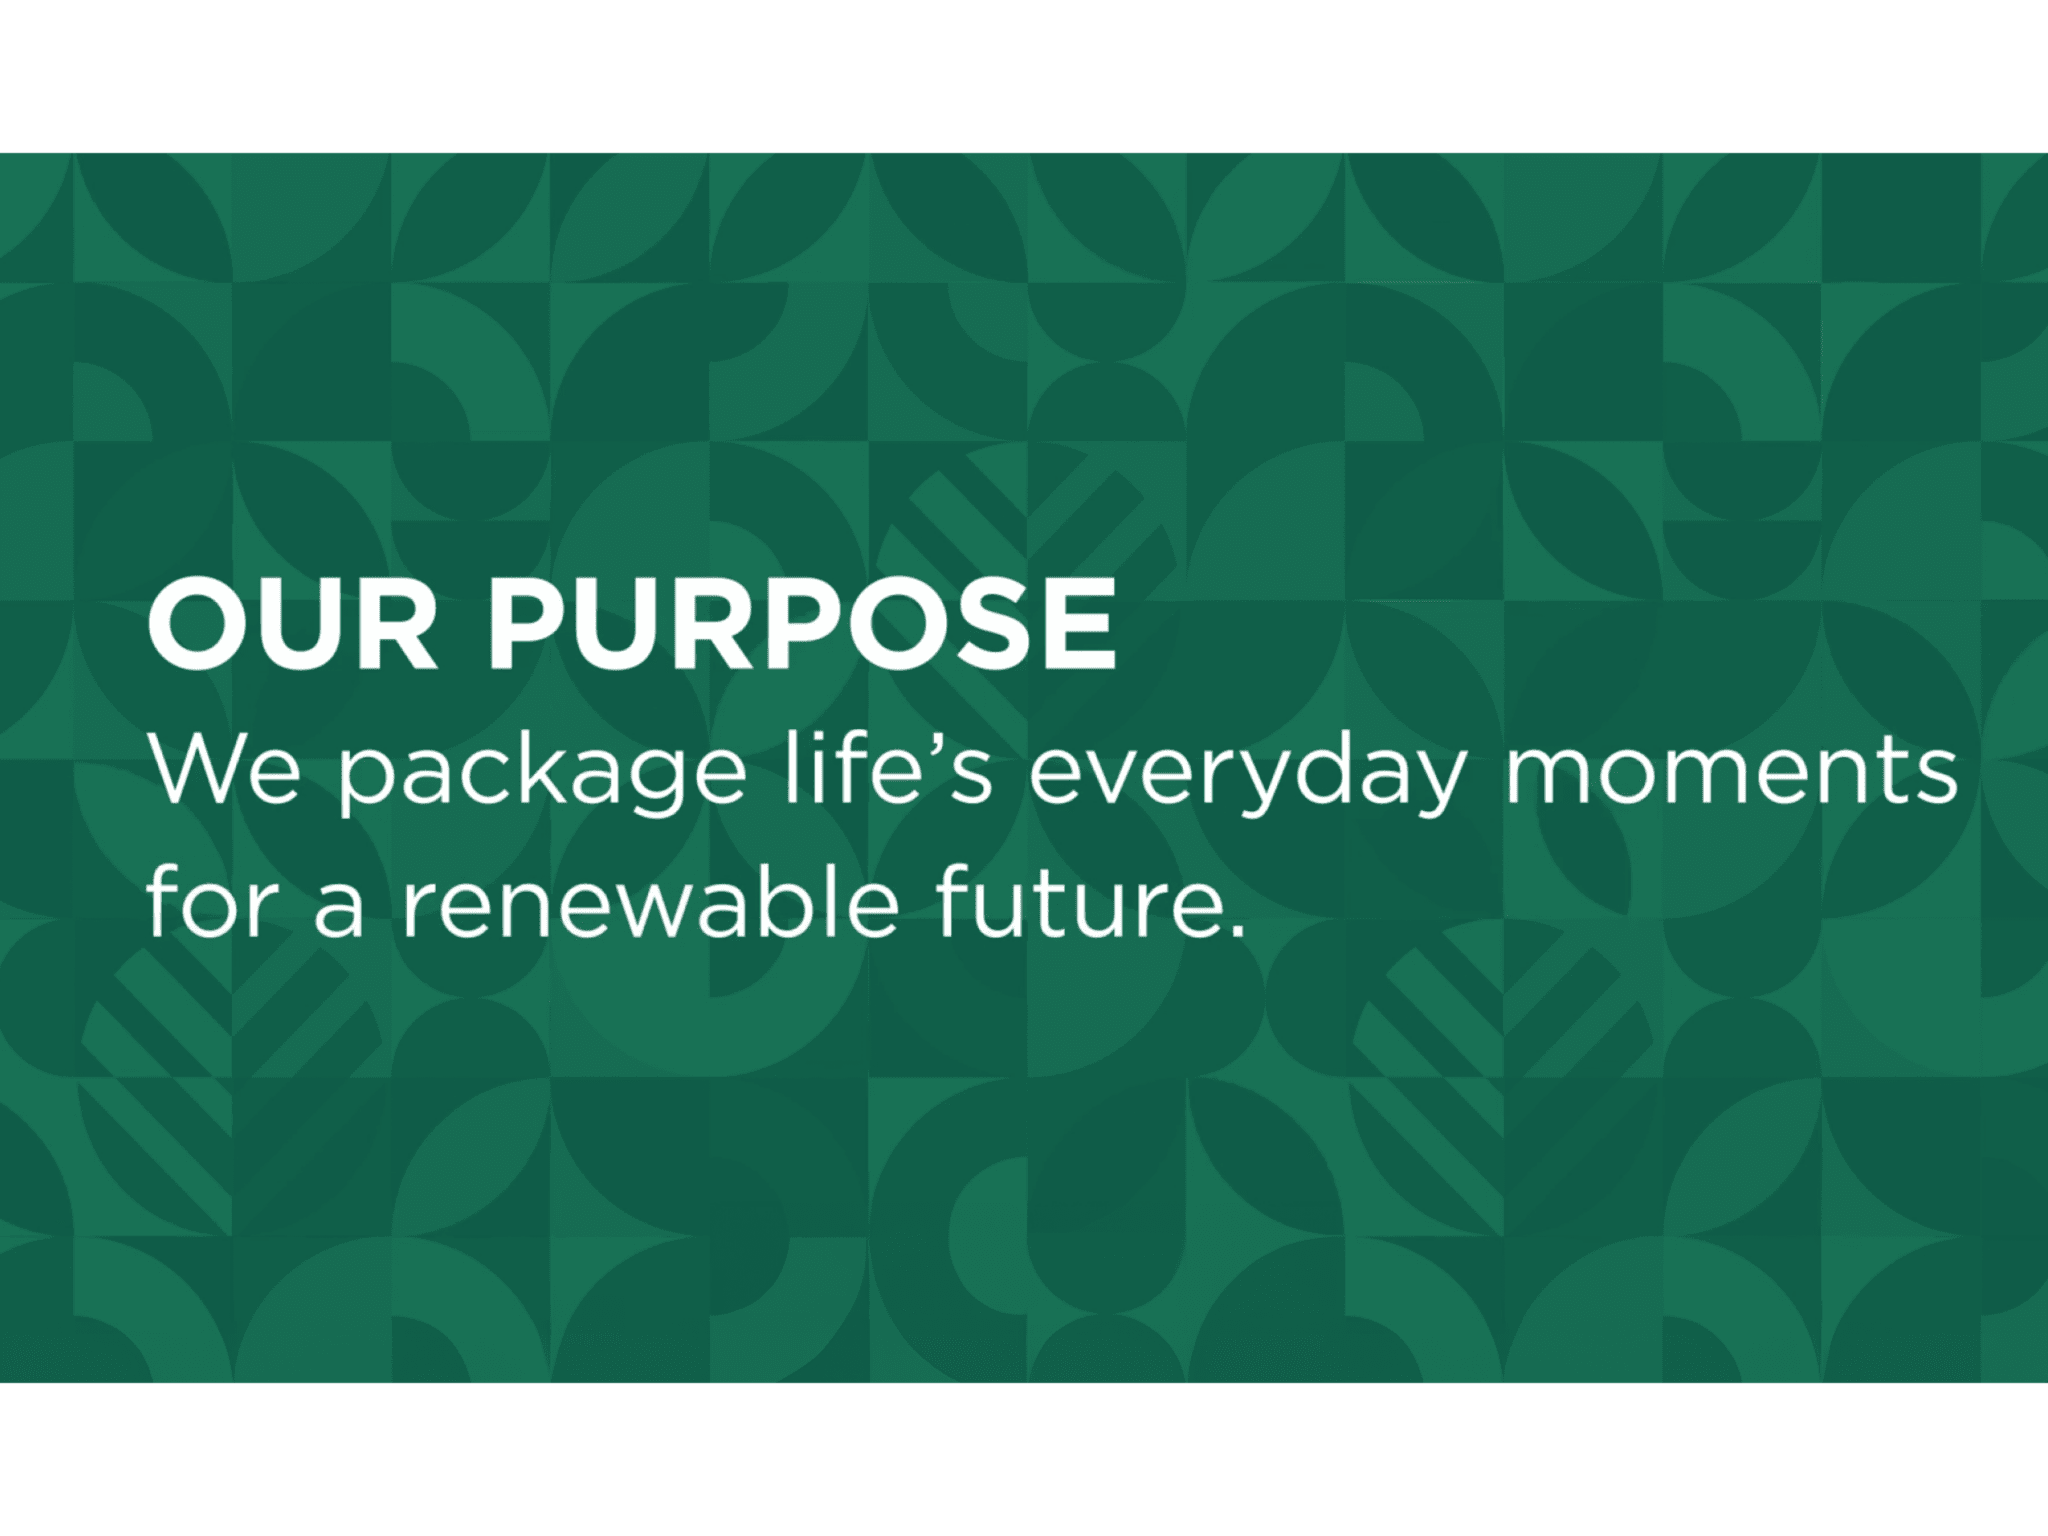 Graphic Packaging veröffentlicht eine Absichtserklärung, um sein Engagement für den Planeten, die Menschen und eine Zukunft auf Basis nachwachsender Rohstoffe zu unterstreichen. 